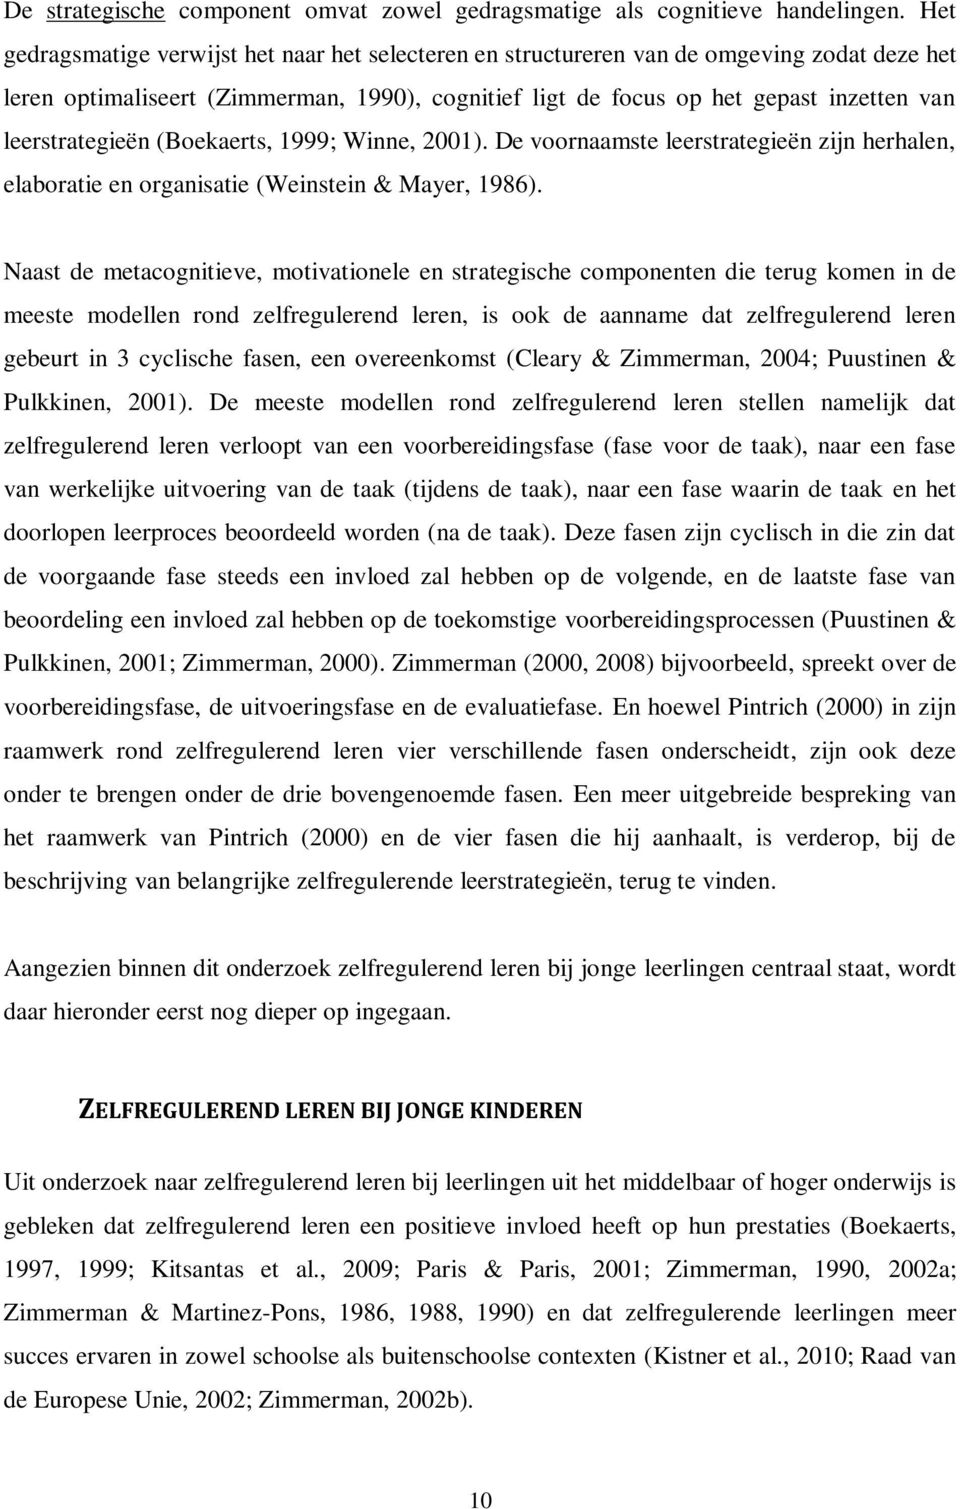 leerstrategieën (Boekaerts, 1999; Winne, 2001). De voornaamste leerstrategieën zijn herhalen, elaboratie en organisatie (Weinstein & Mayer, 1986).